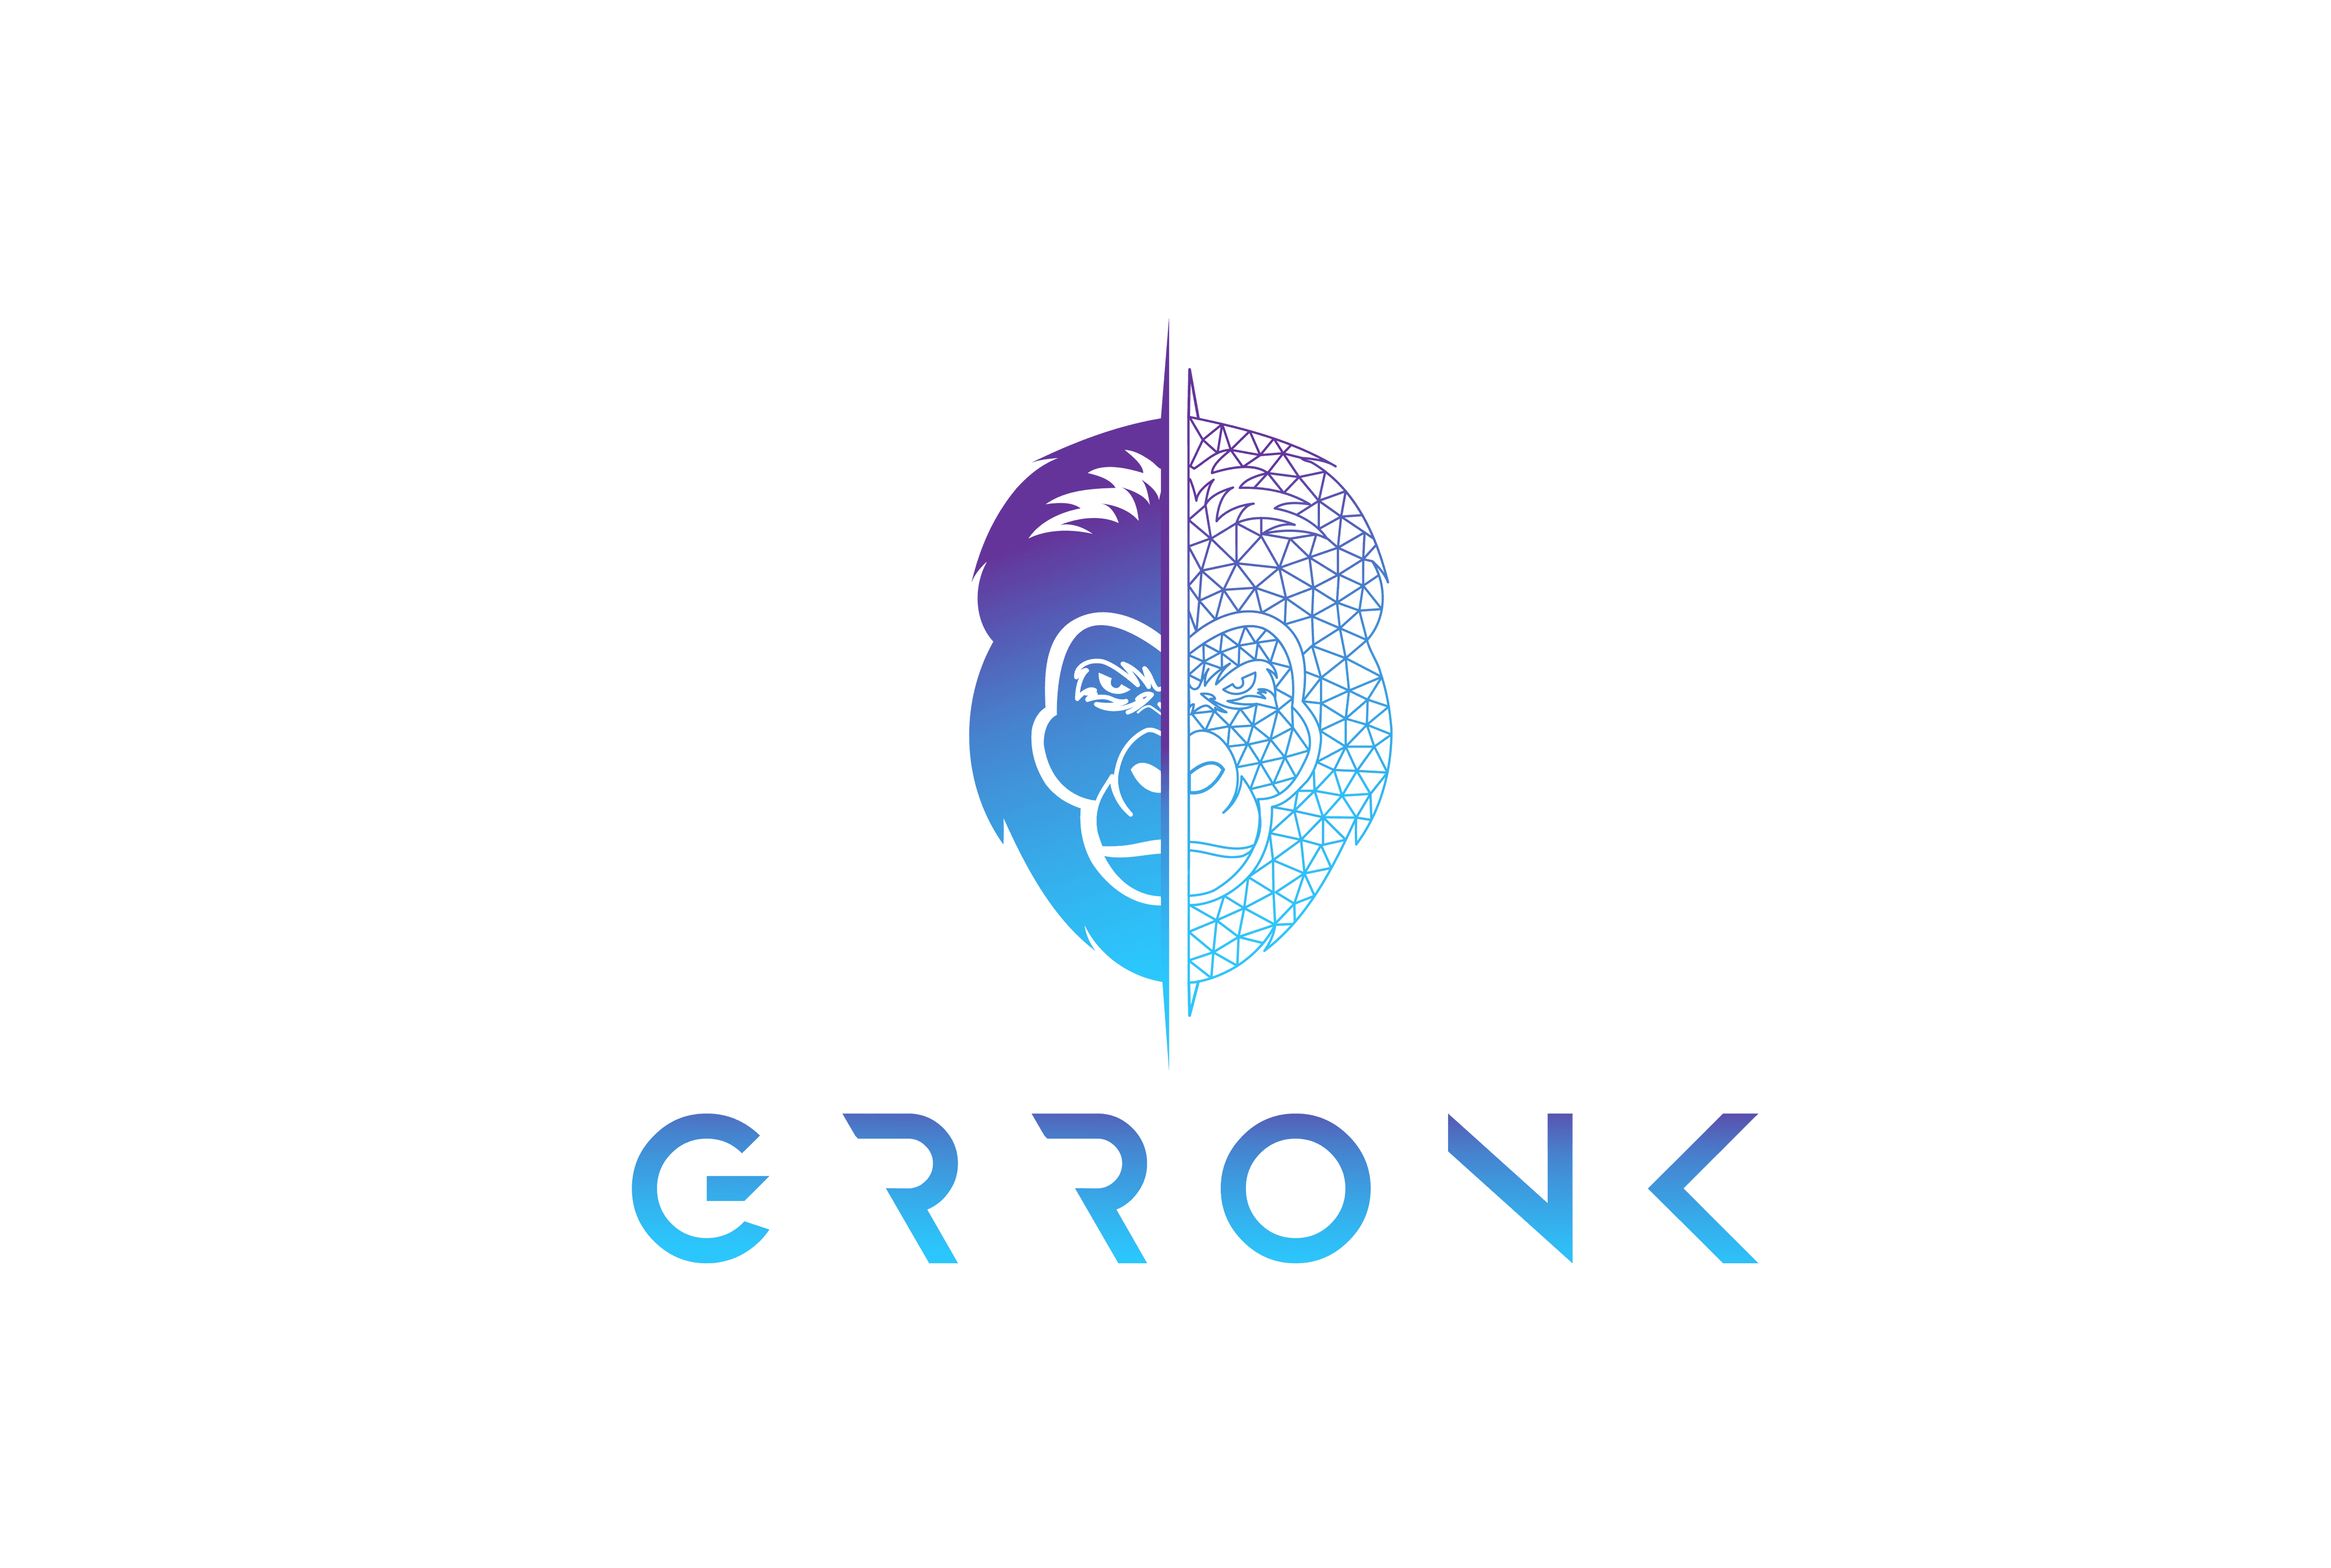 Grronk